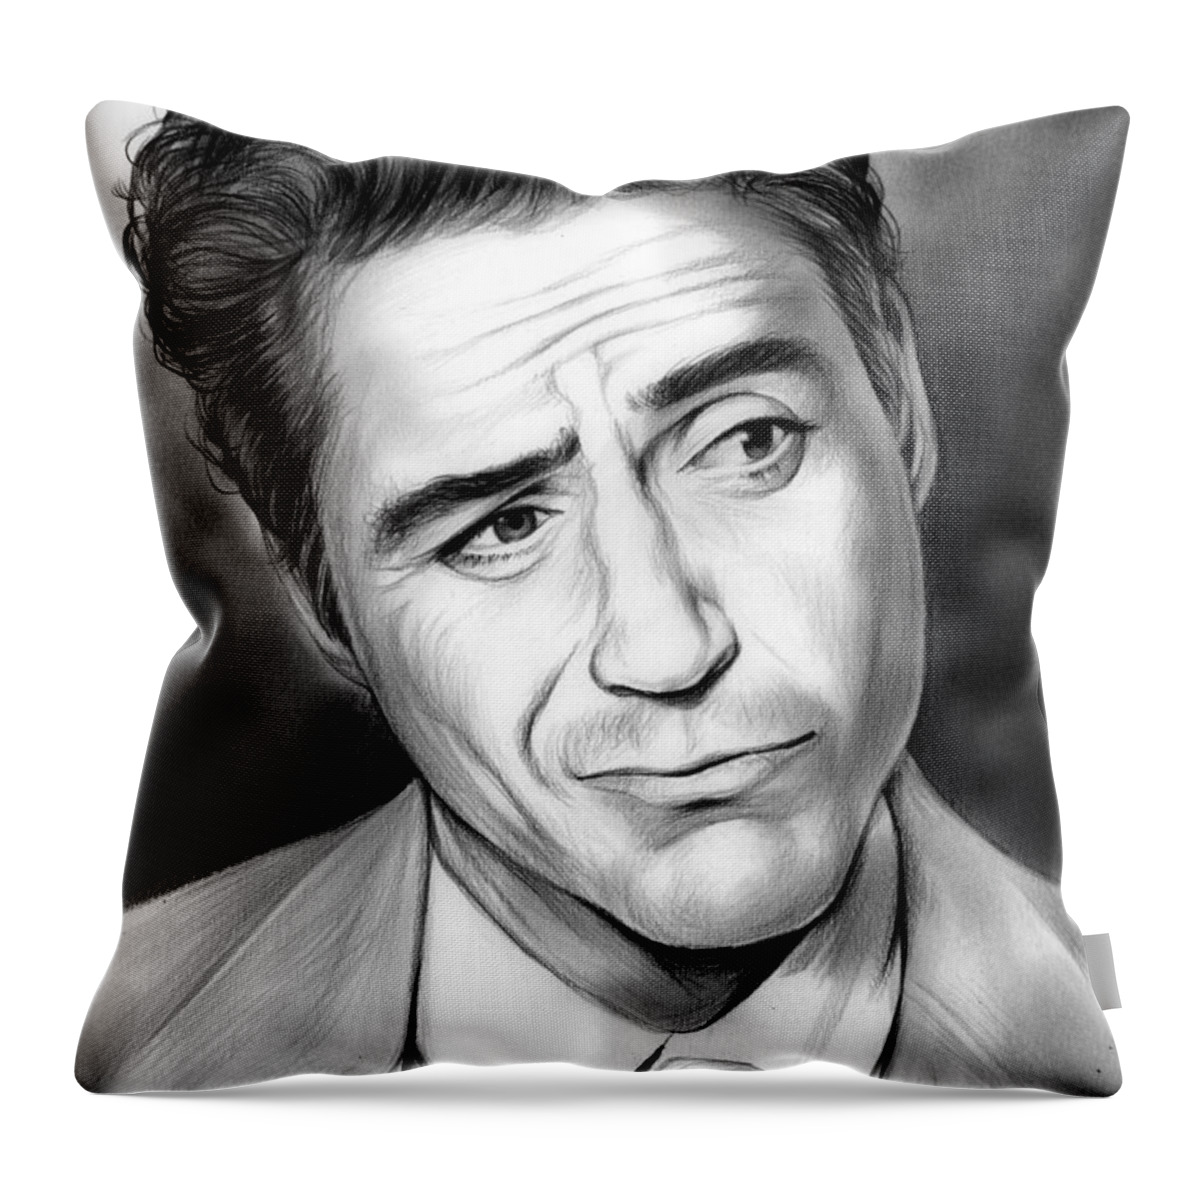 Robert Downey Throw Pillow featuring the drawing Robert Downey Jr by Greg Joens